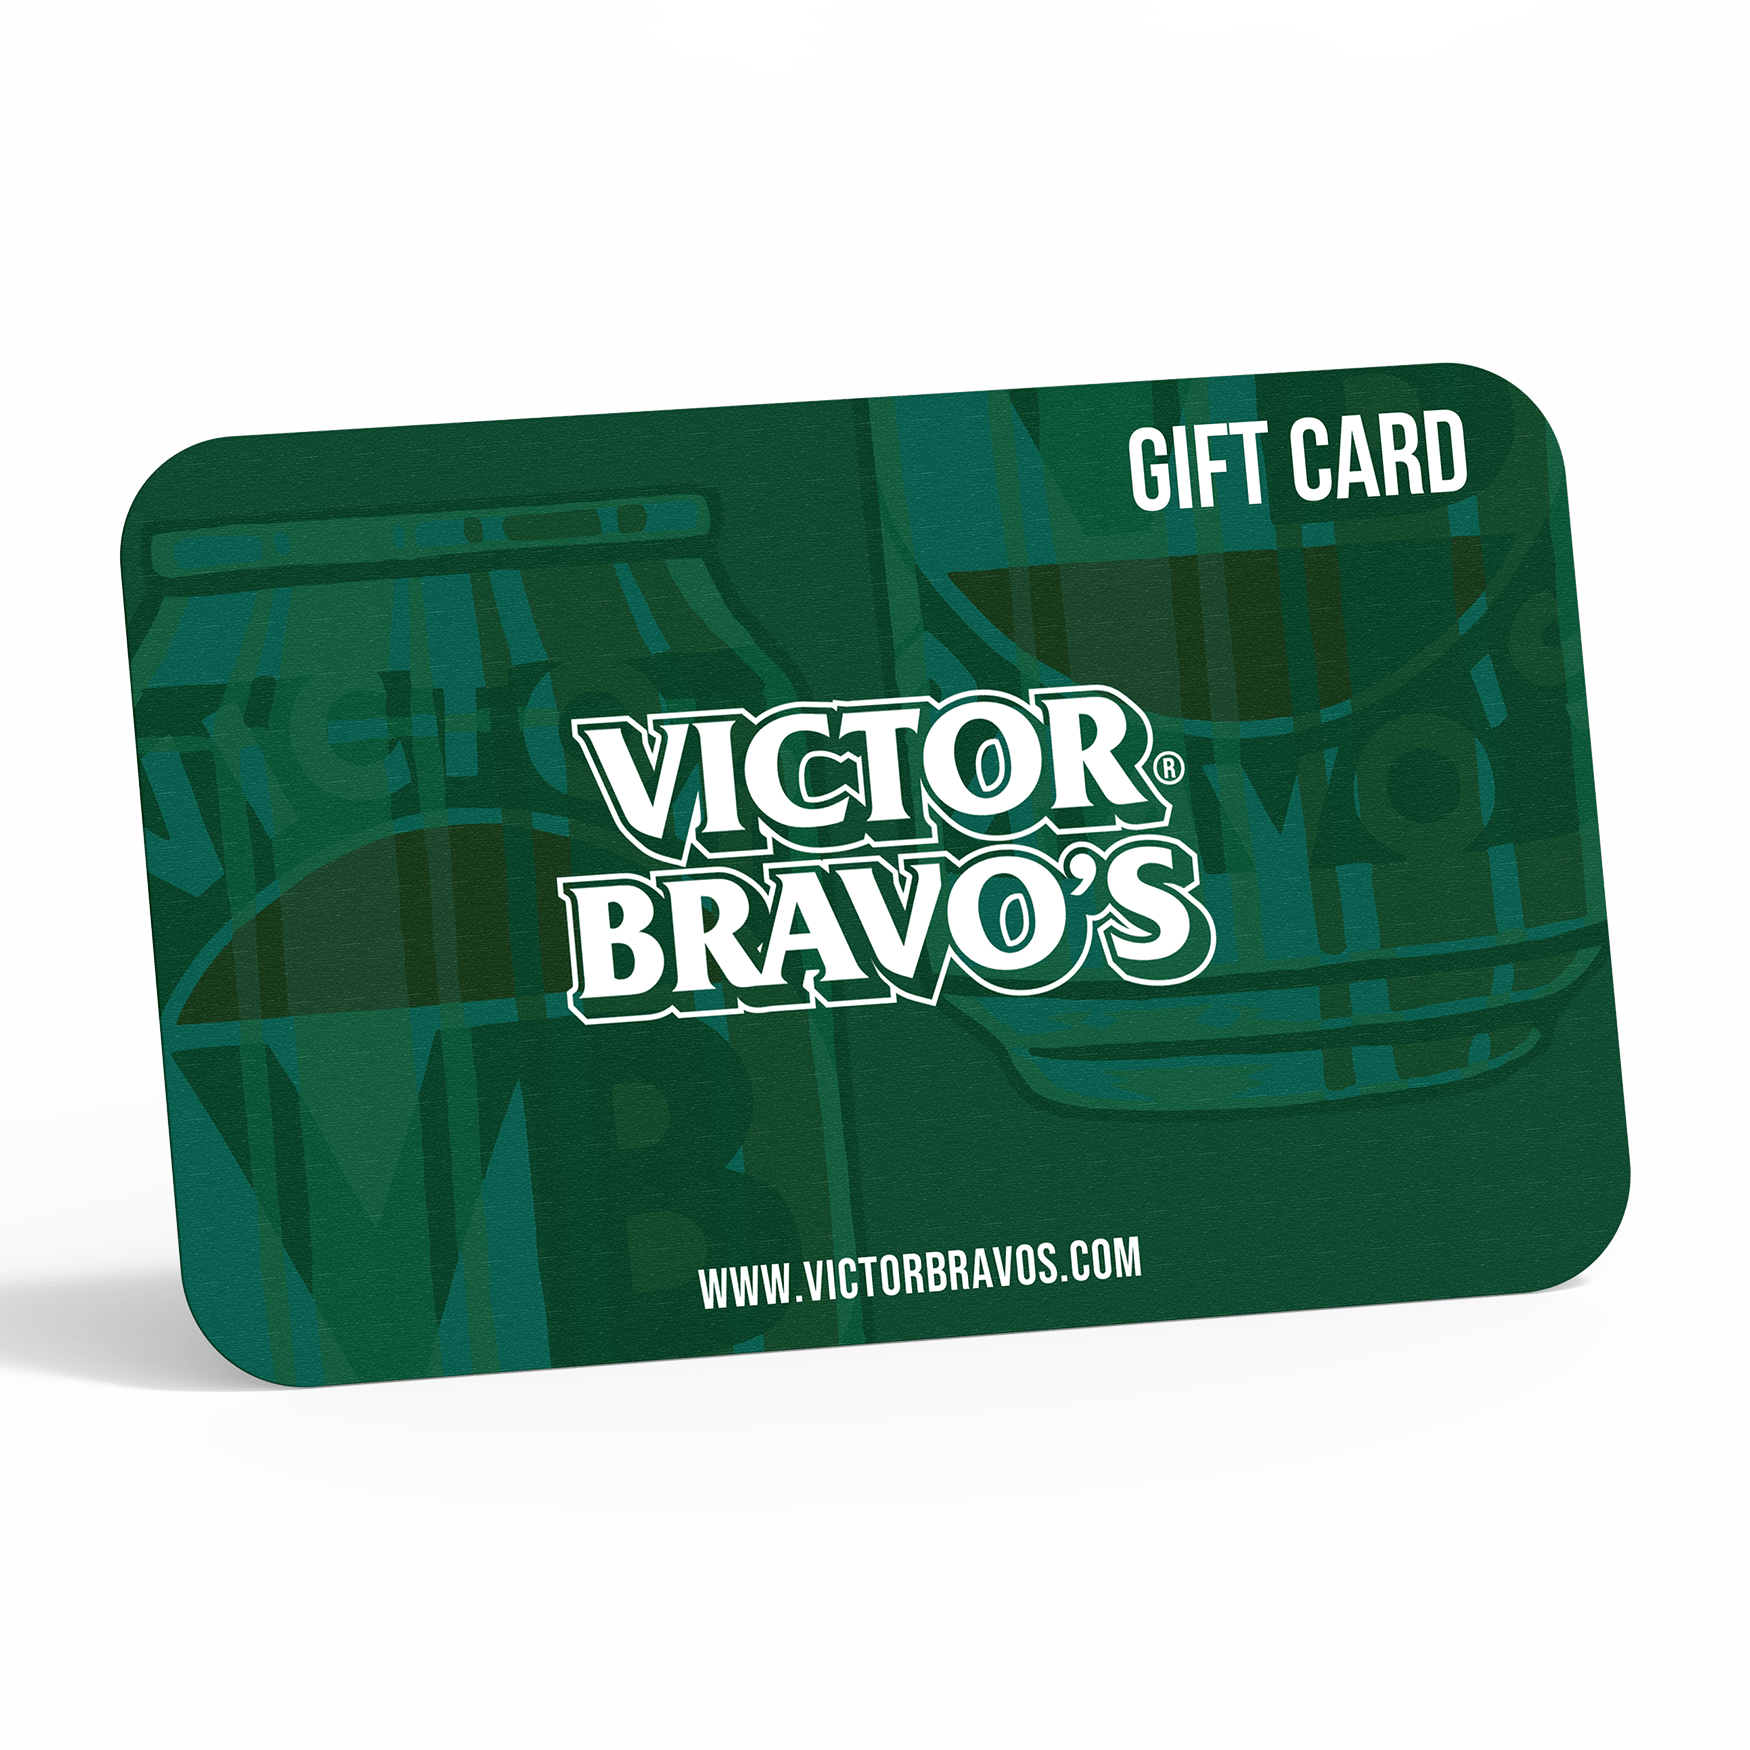 Victor Bravo's Gift Card Victor Bravo's Gift Card